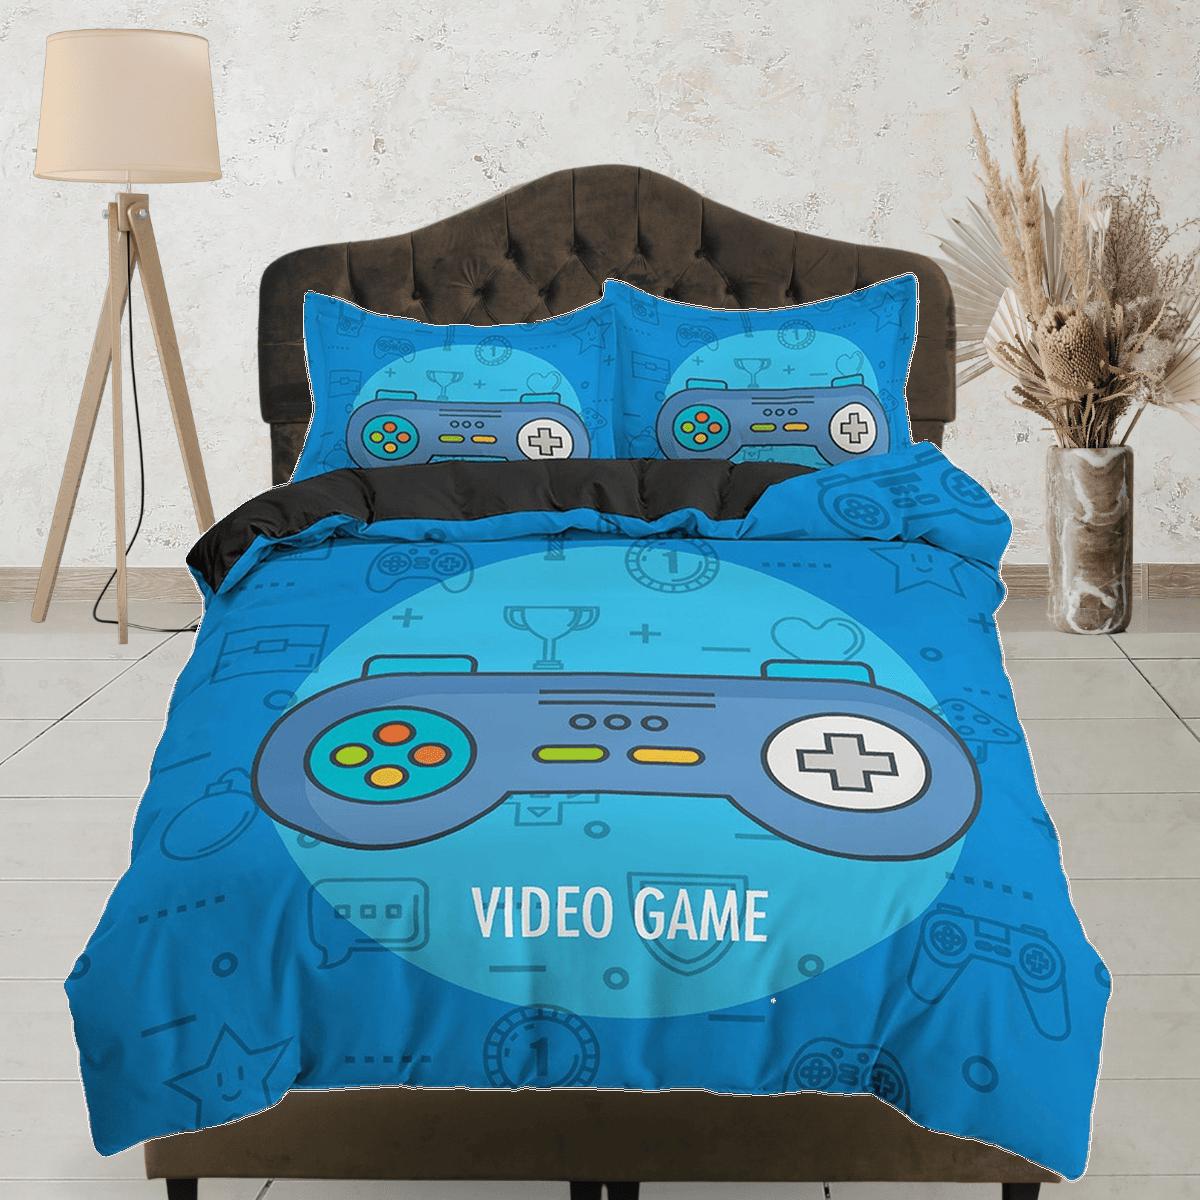 daintyduvet Video gamer bedding blue duvet cover, gamer boyfriend gift bedding set full king queen twin, boys bedroom, college dorm bedding